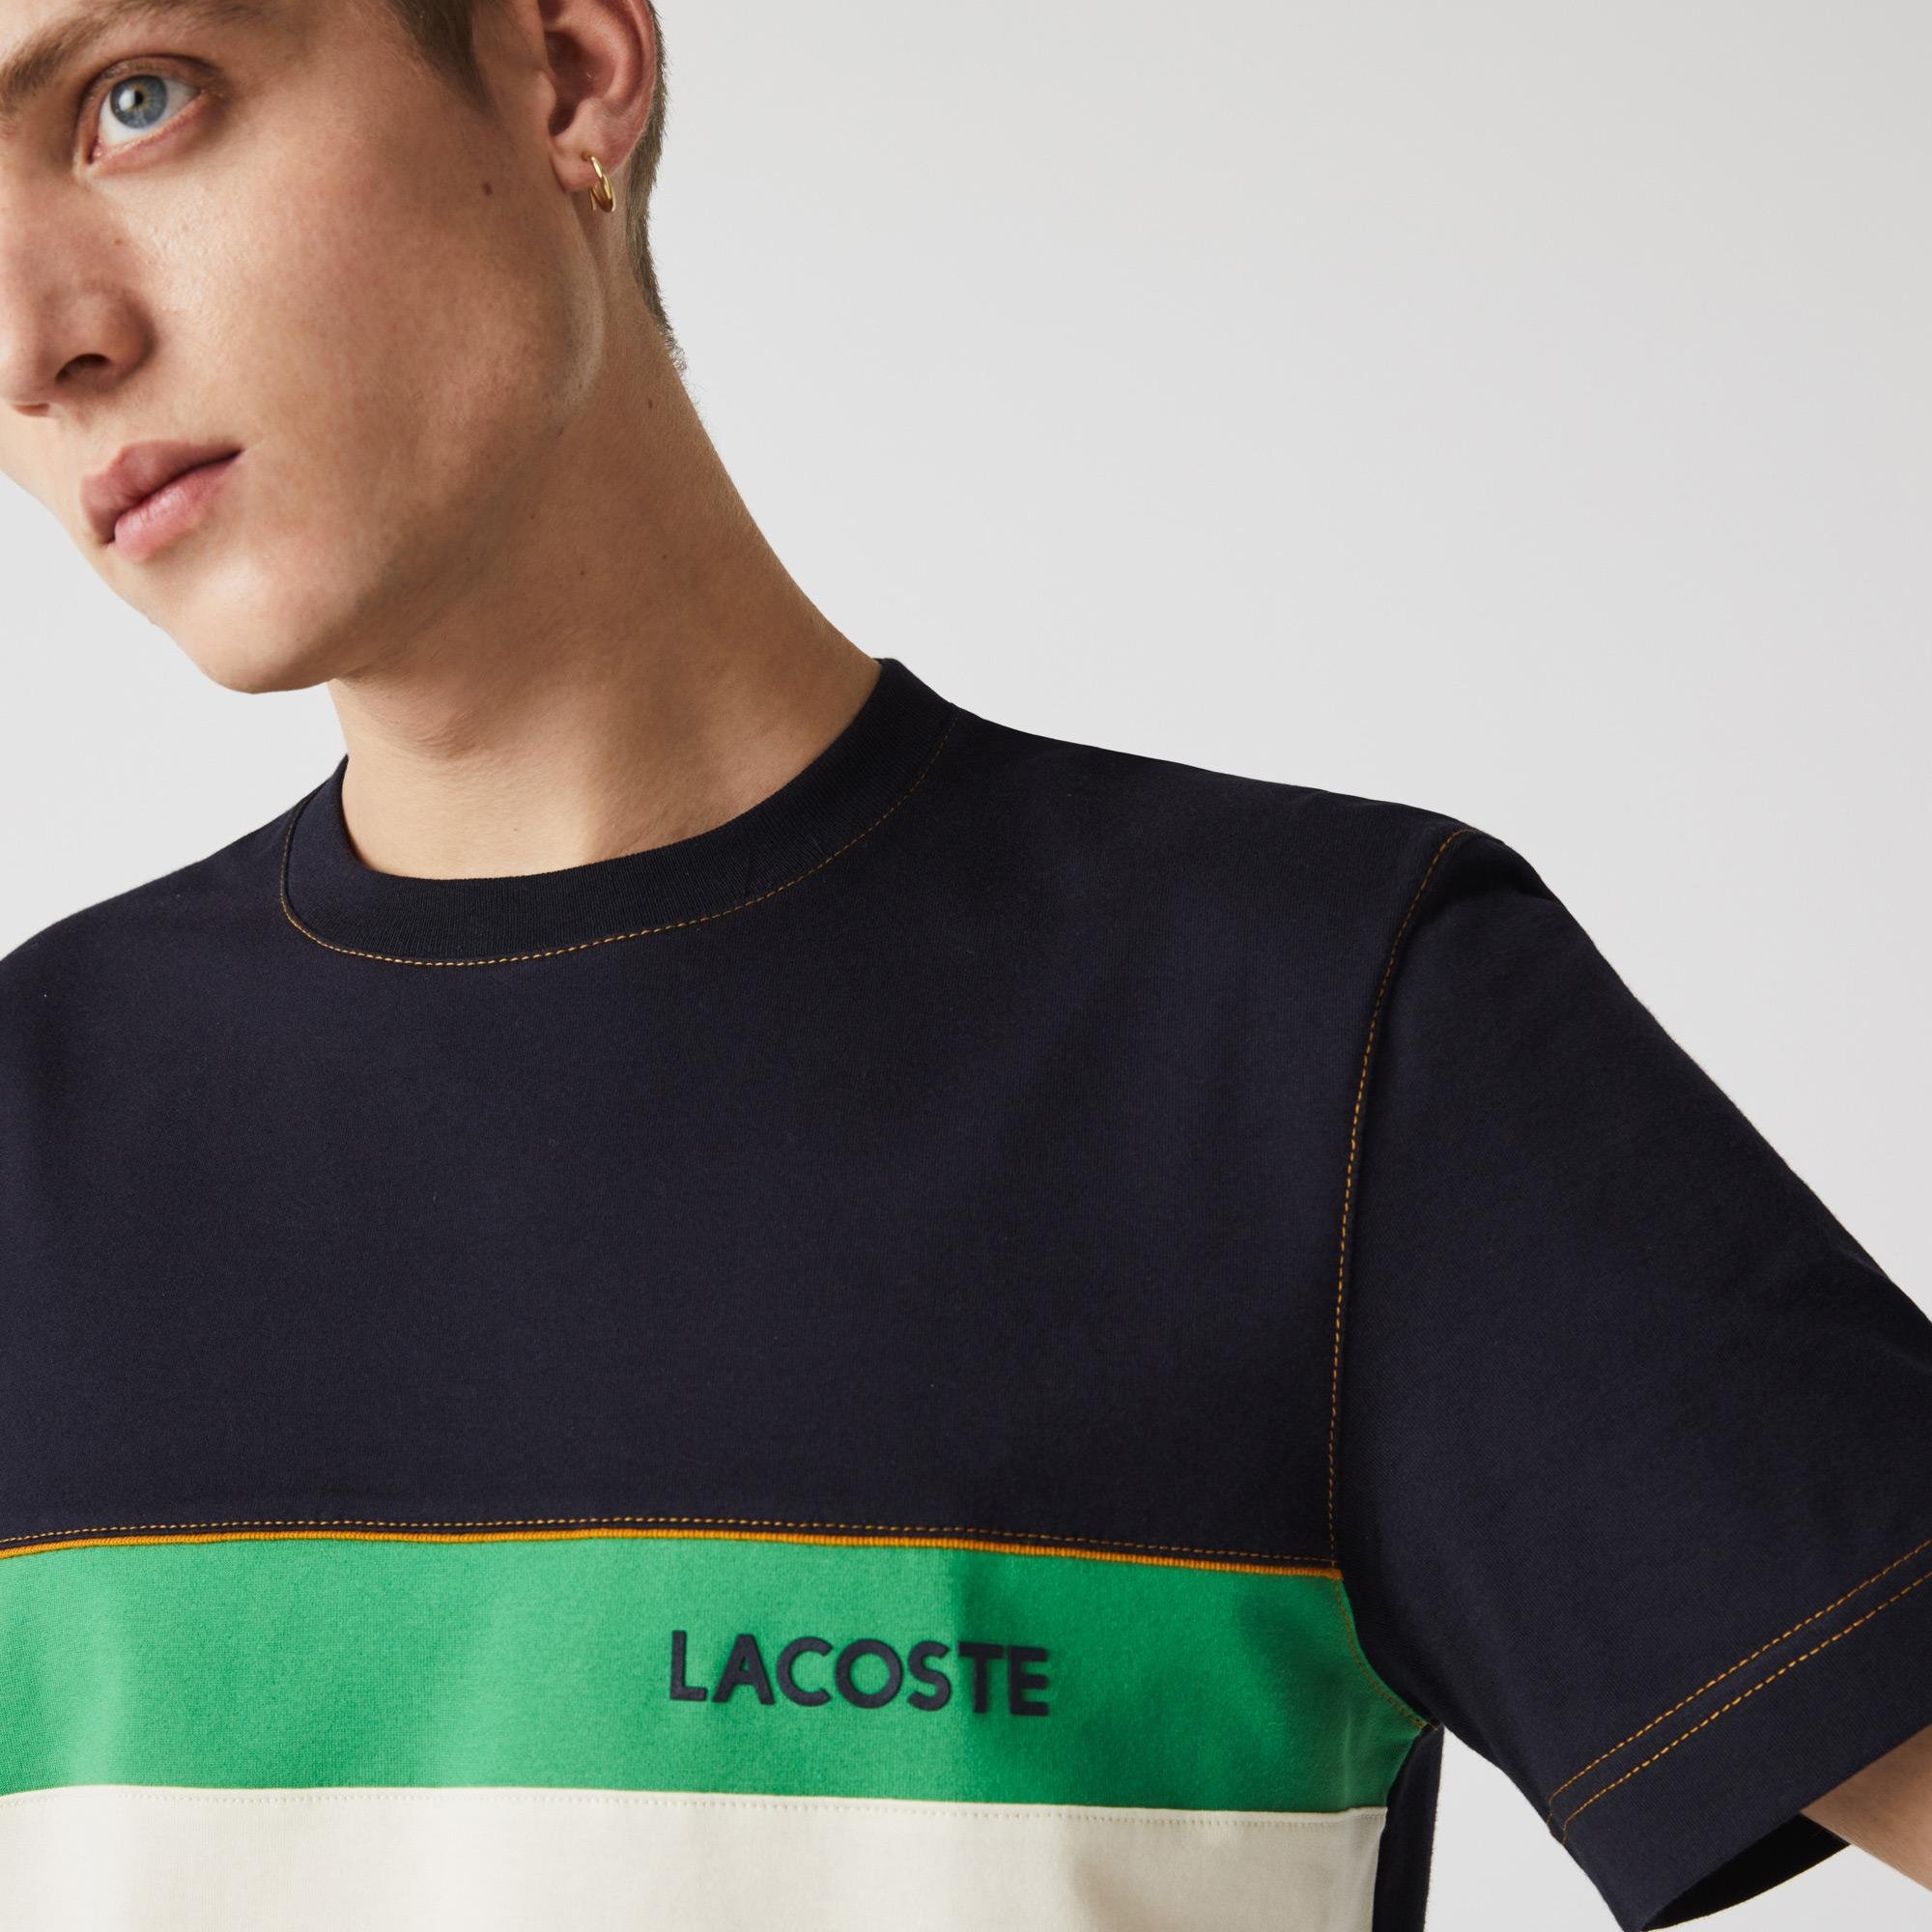 Lacoste Men?s Crew Neck Lettered Colorblock Cotton T-shirt